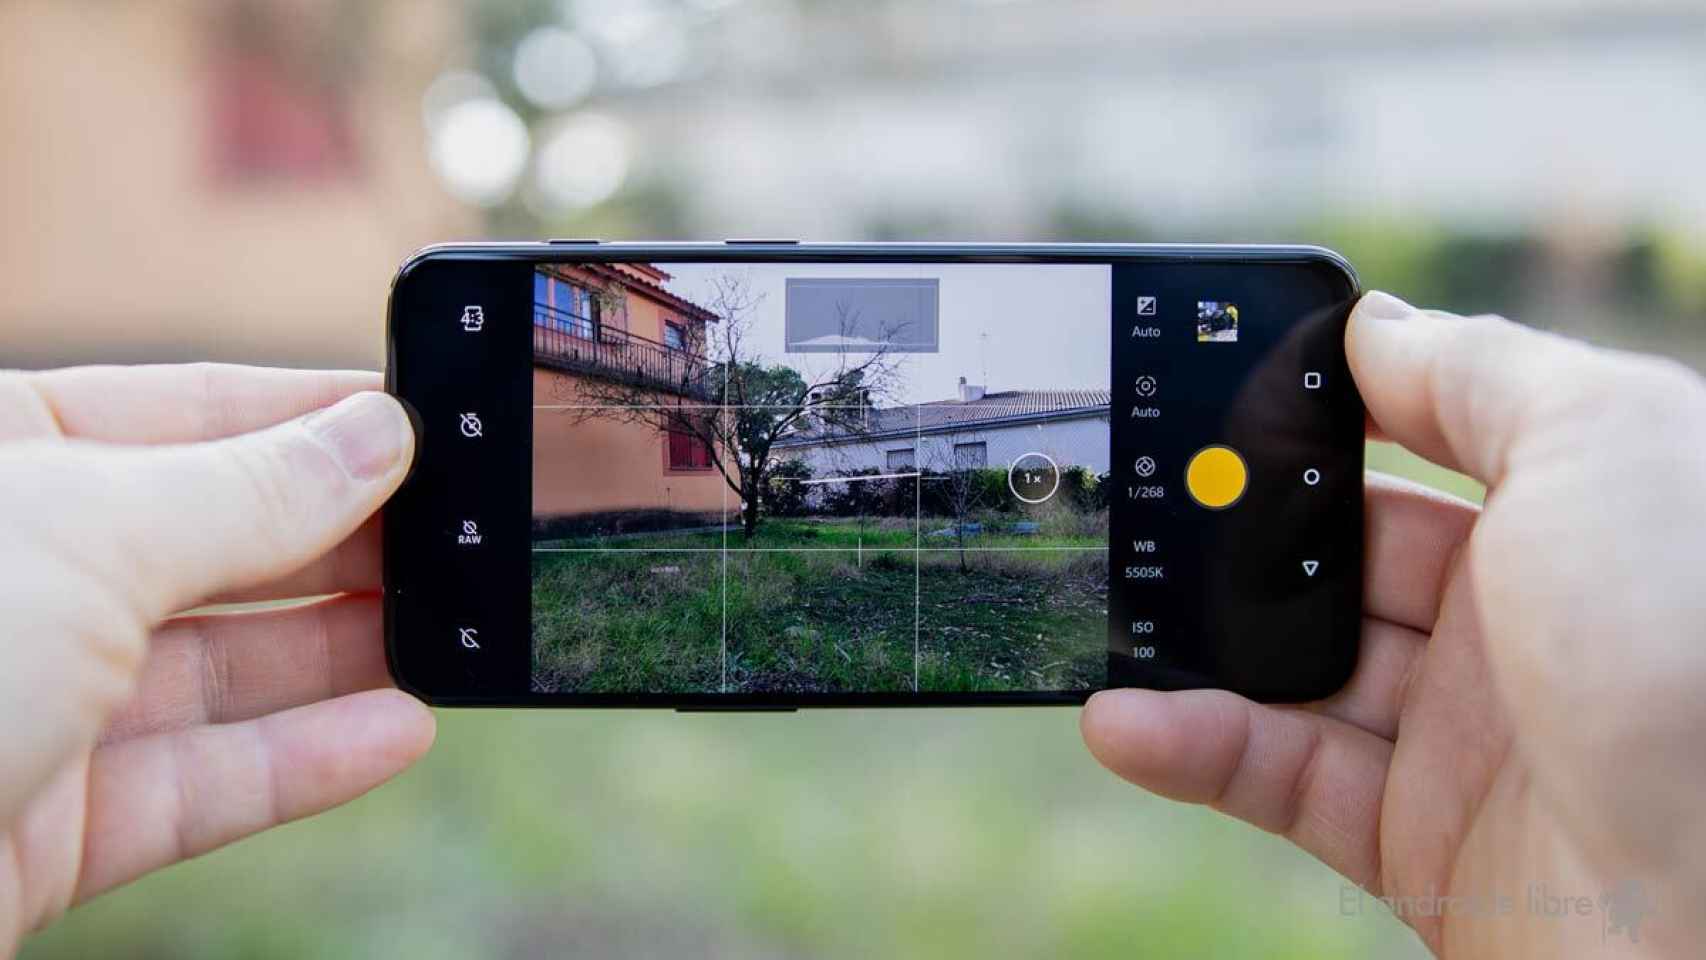 Polémica en un concurso de OnePlus: falsifica una foto robada y gana